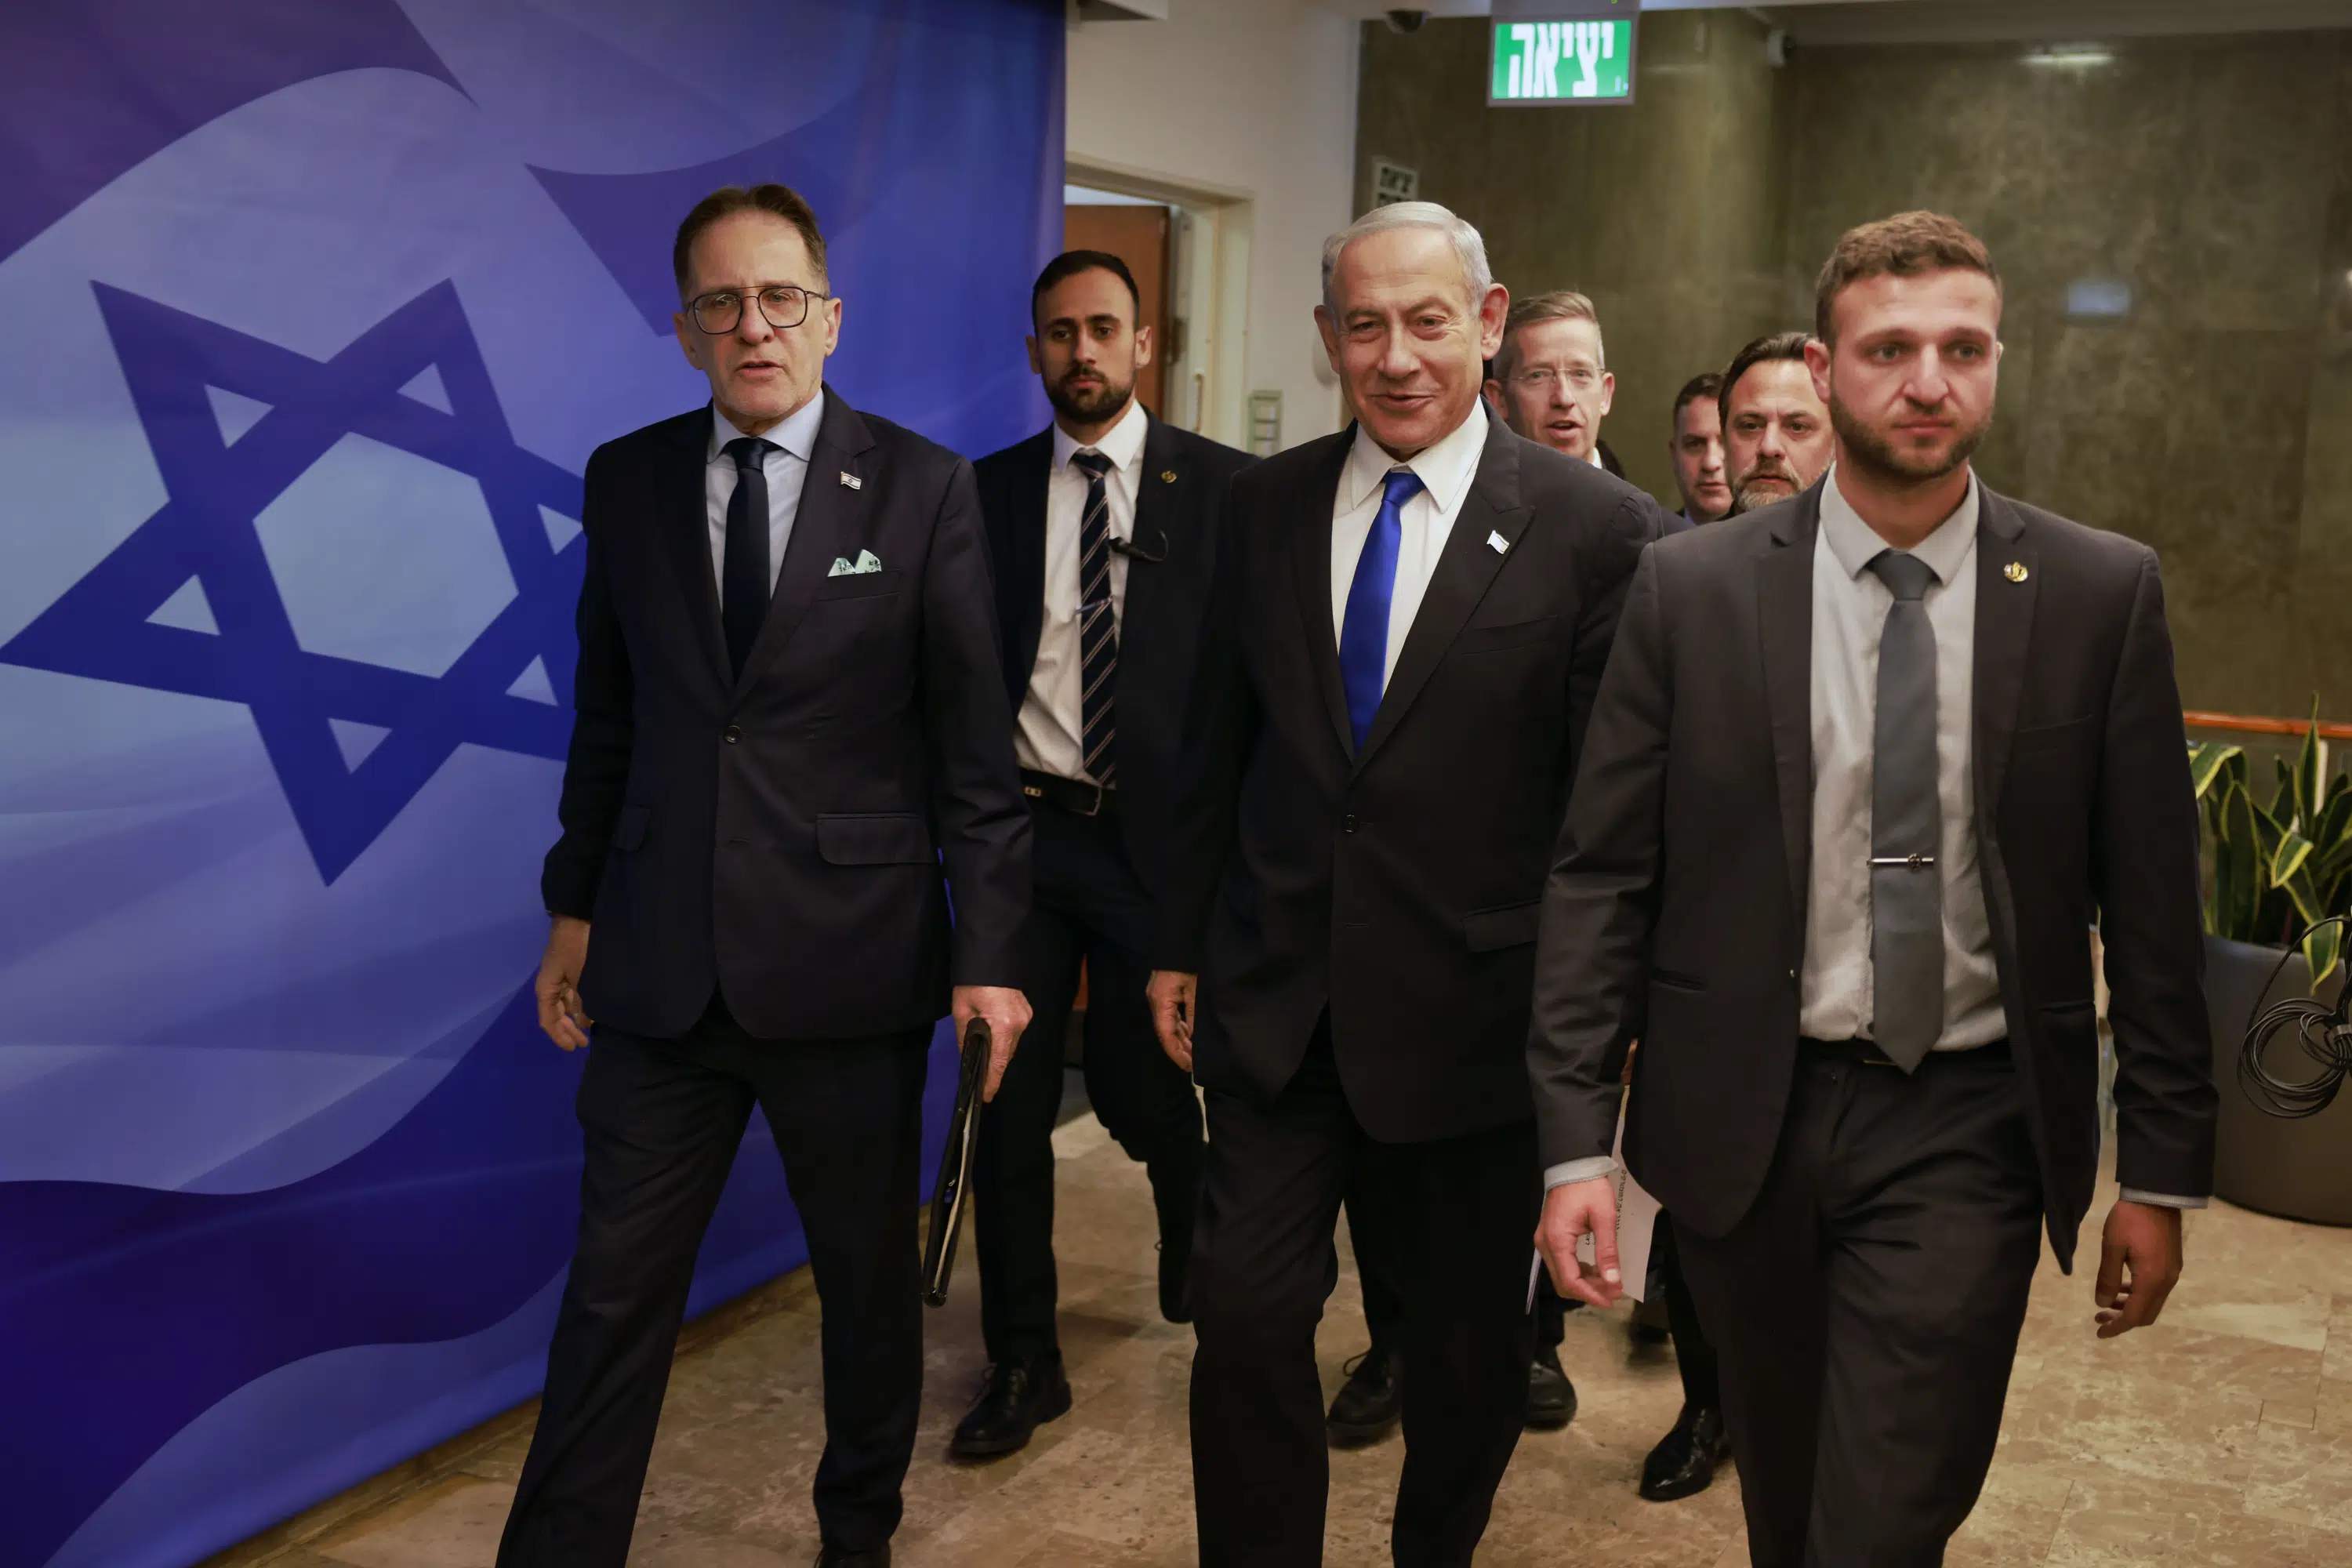 Biden adviser meets Netanyahu amid unease over his govt